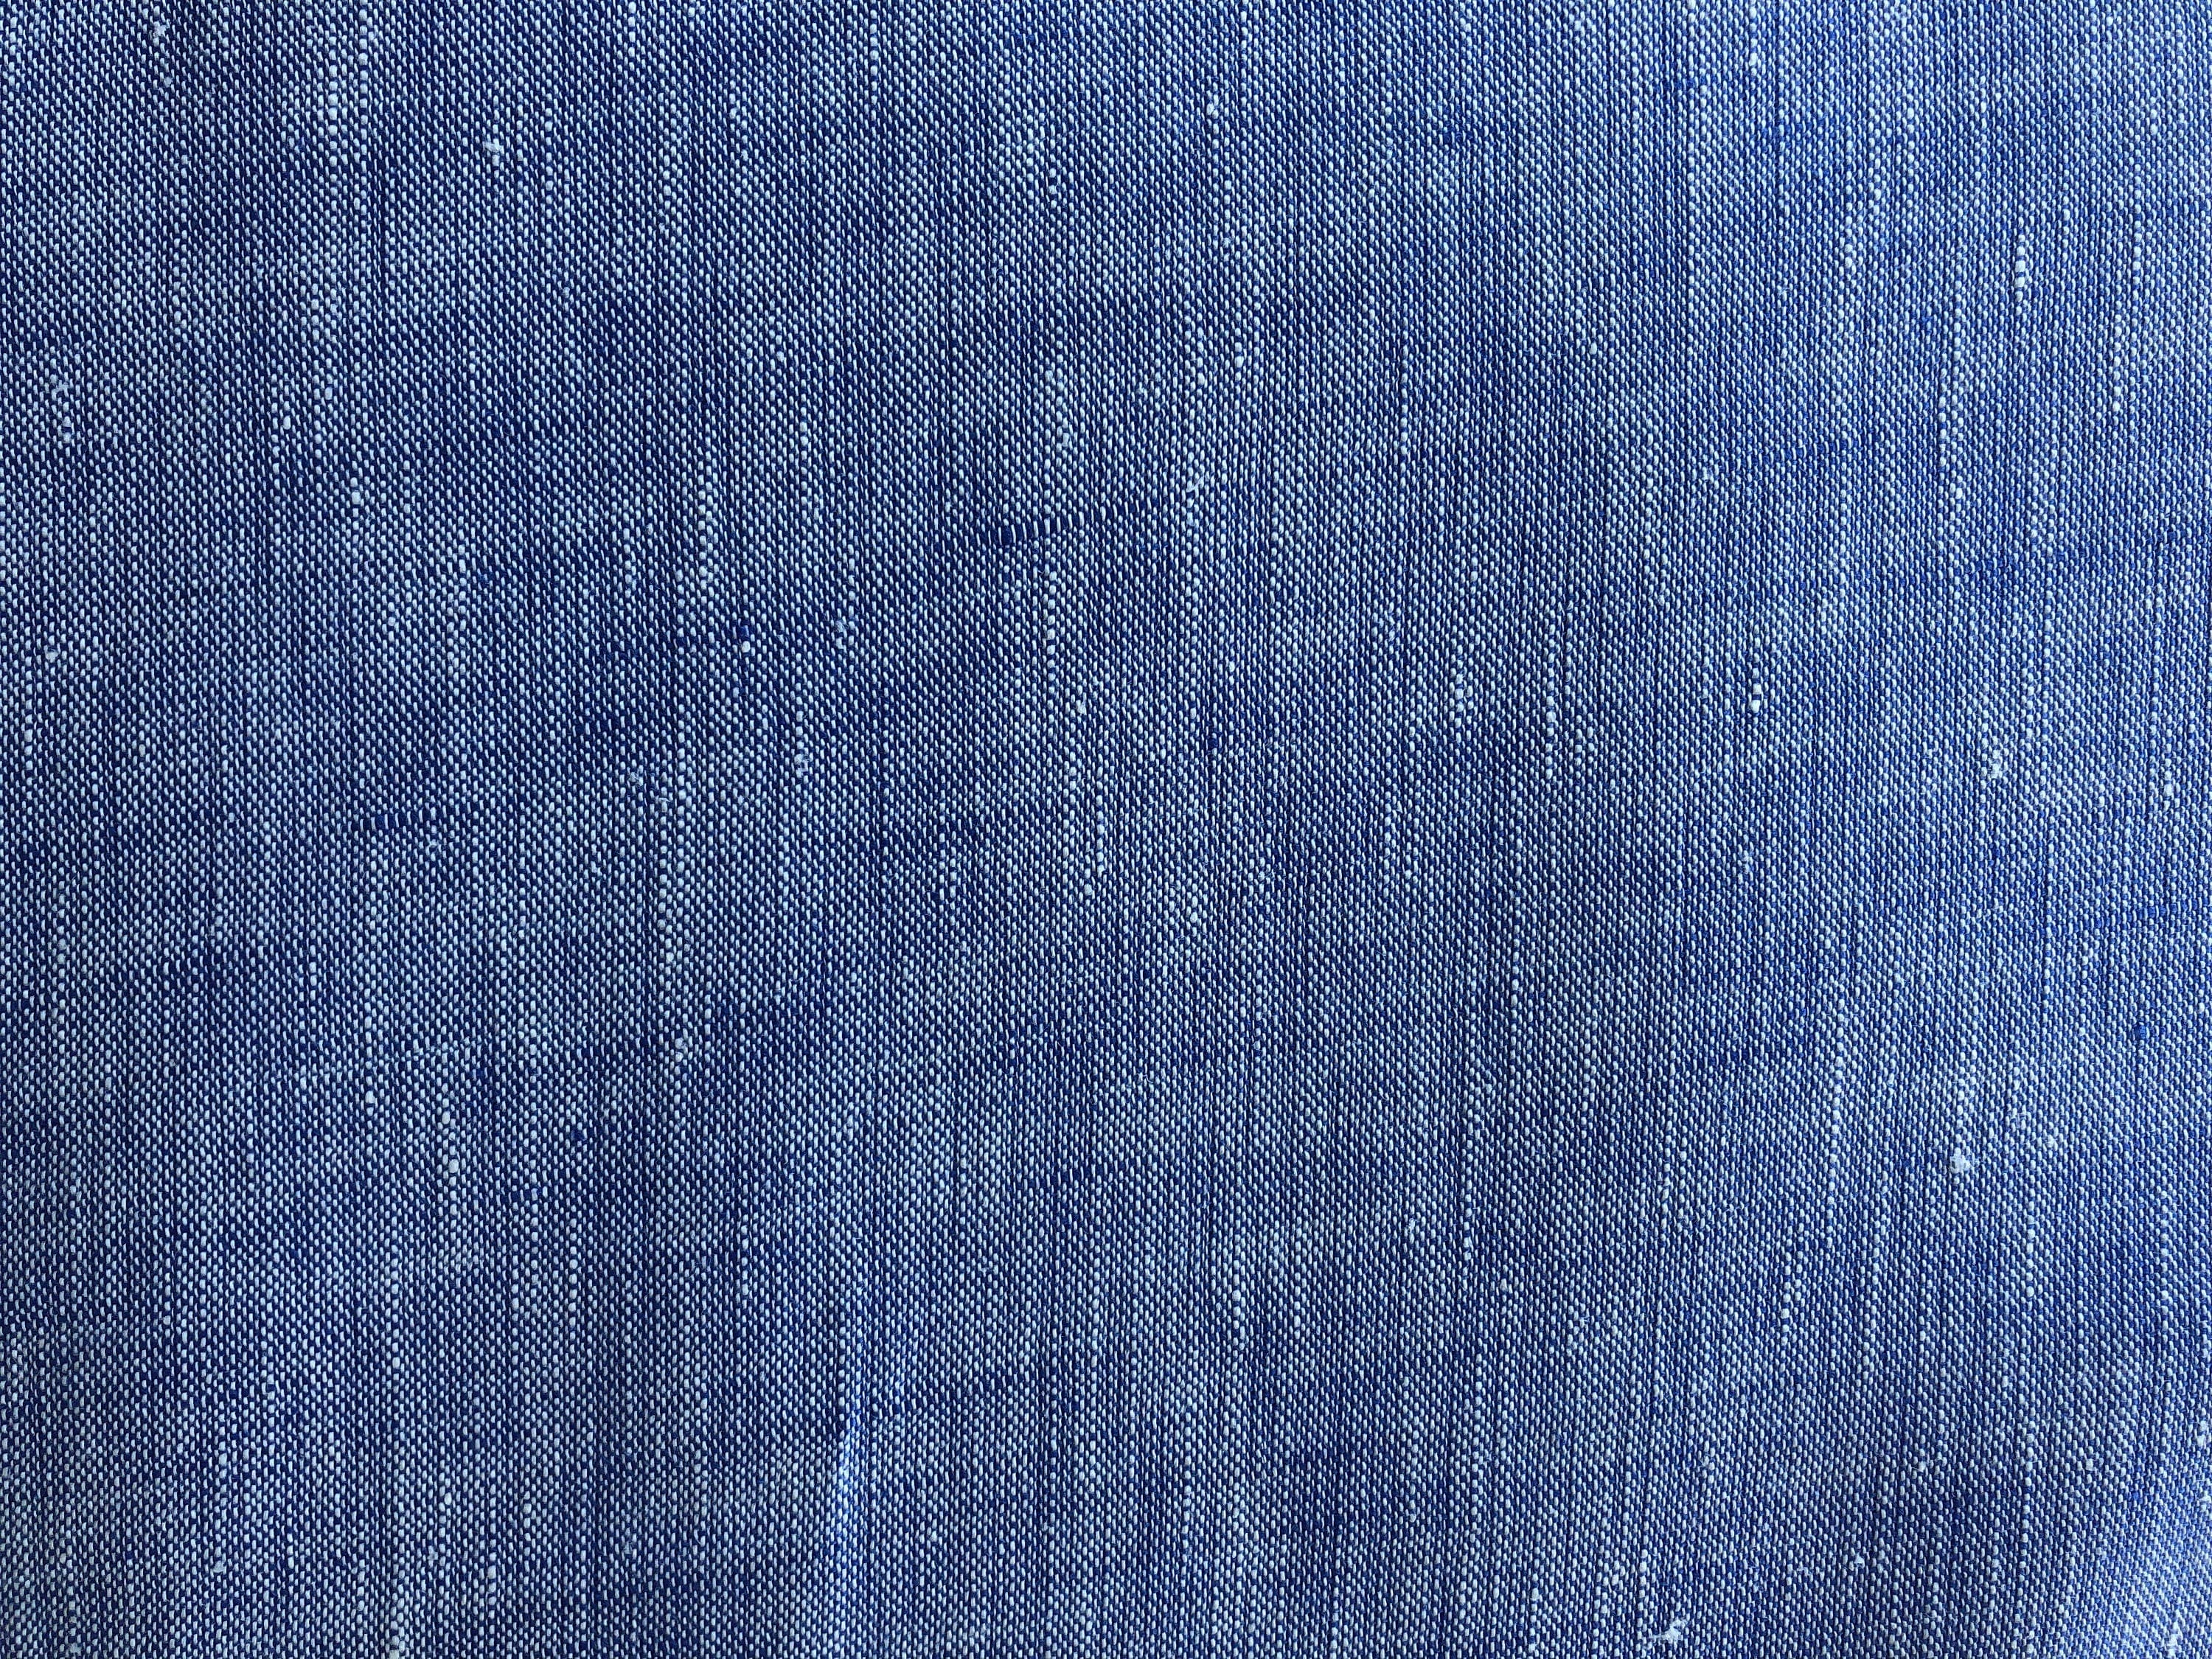 Limerick Linen - Navy - Linen Fabric - Yarn - Dyed Blue Linen - Robert Kaufman - Summer Dress Fabric - L211-1243